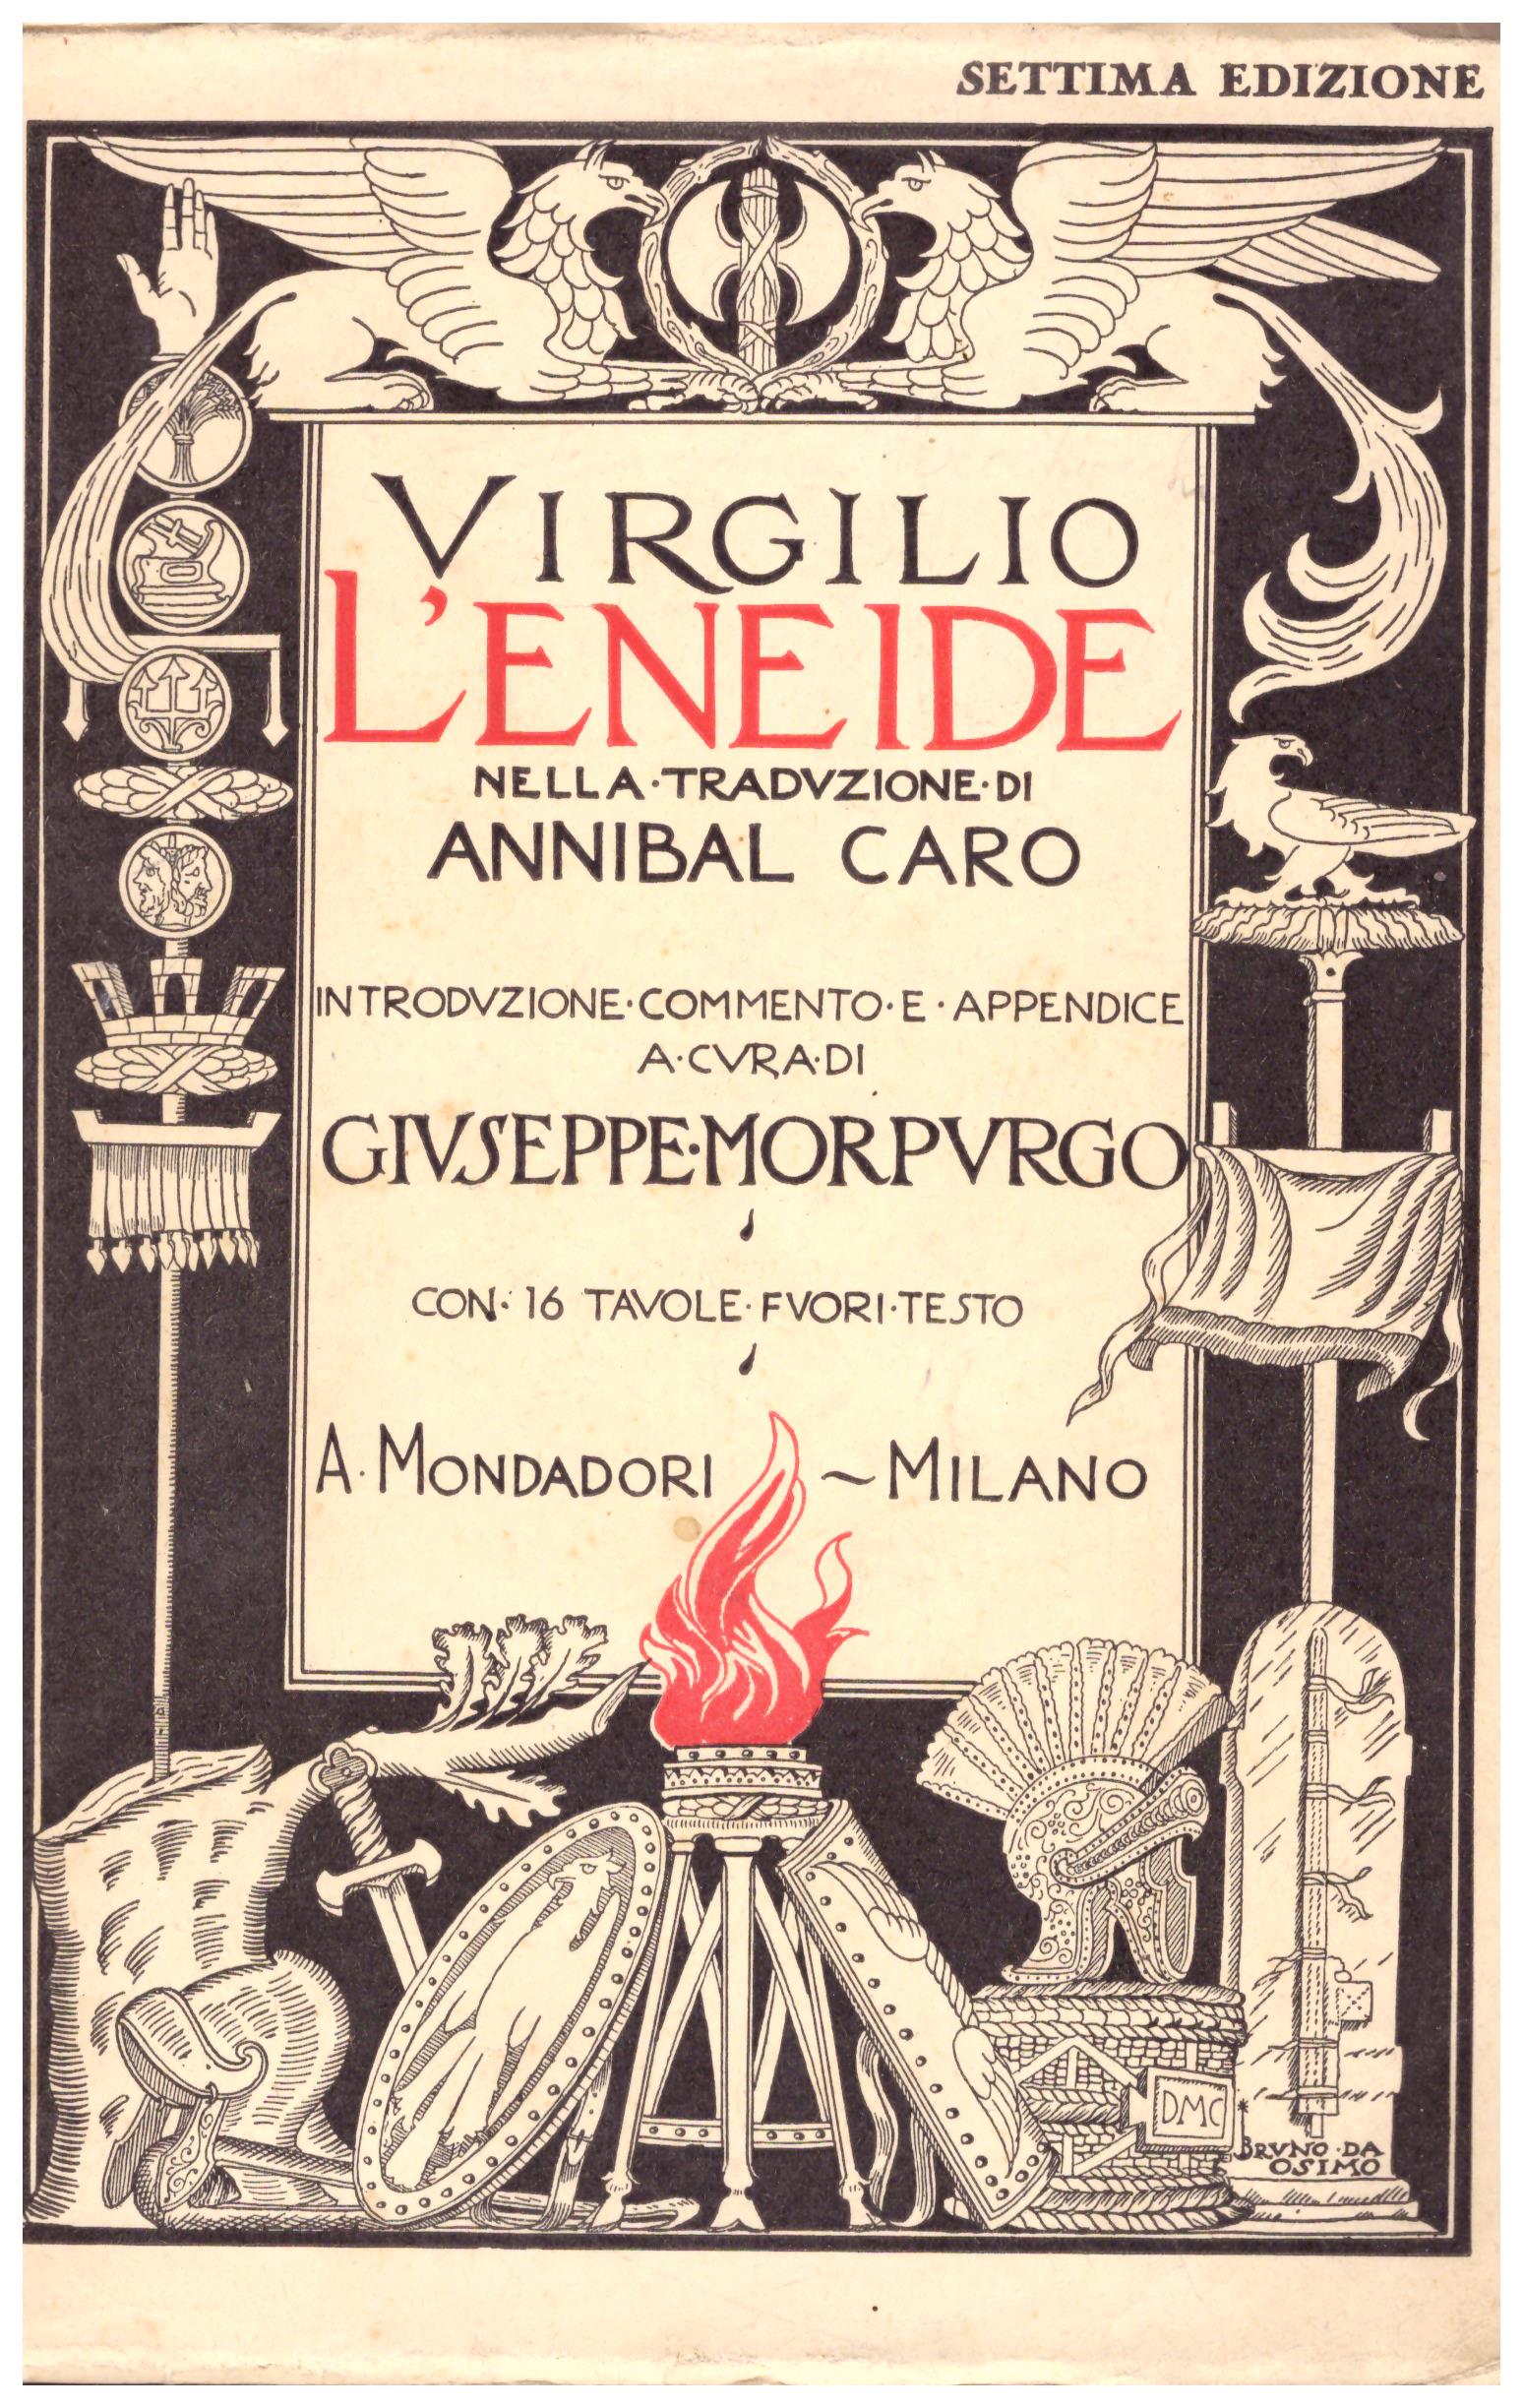 Titolo: L'eneide     Autore: Virgilio, traduzione di Annibal Caro    Editore: A. Mondadori